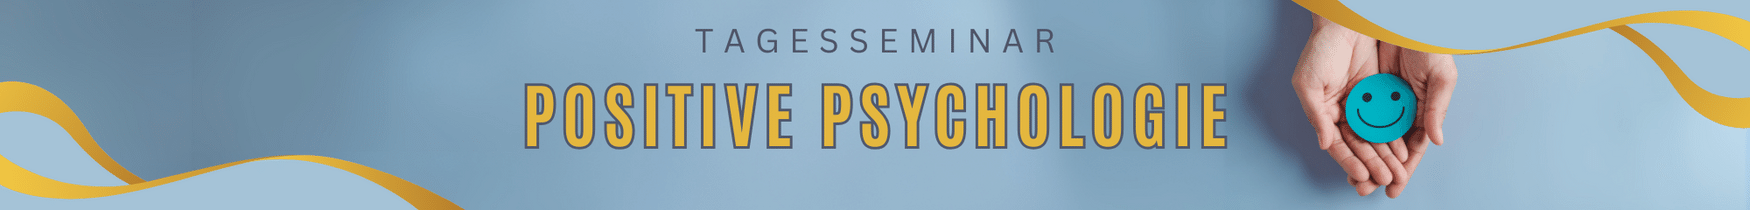 Positive Psychologie Banner